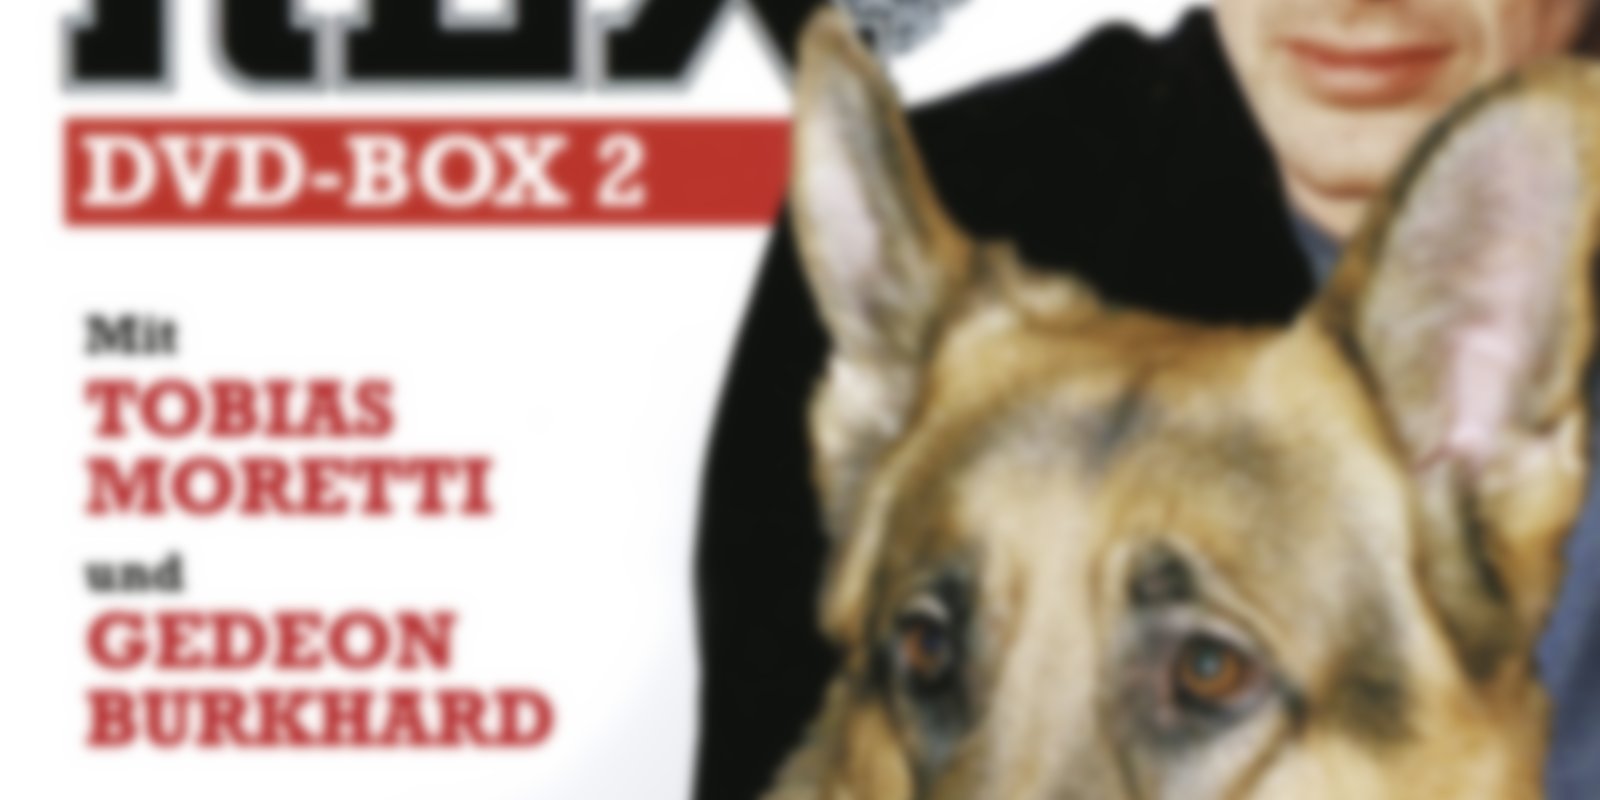 Kommissar Rex - Box 2 - Staffel 4 + 5